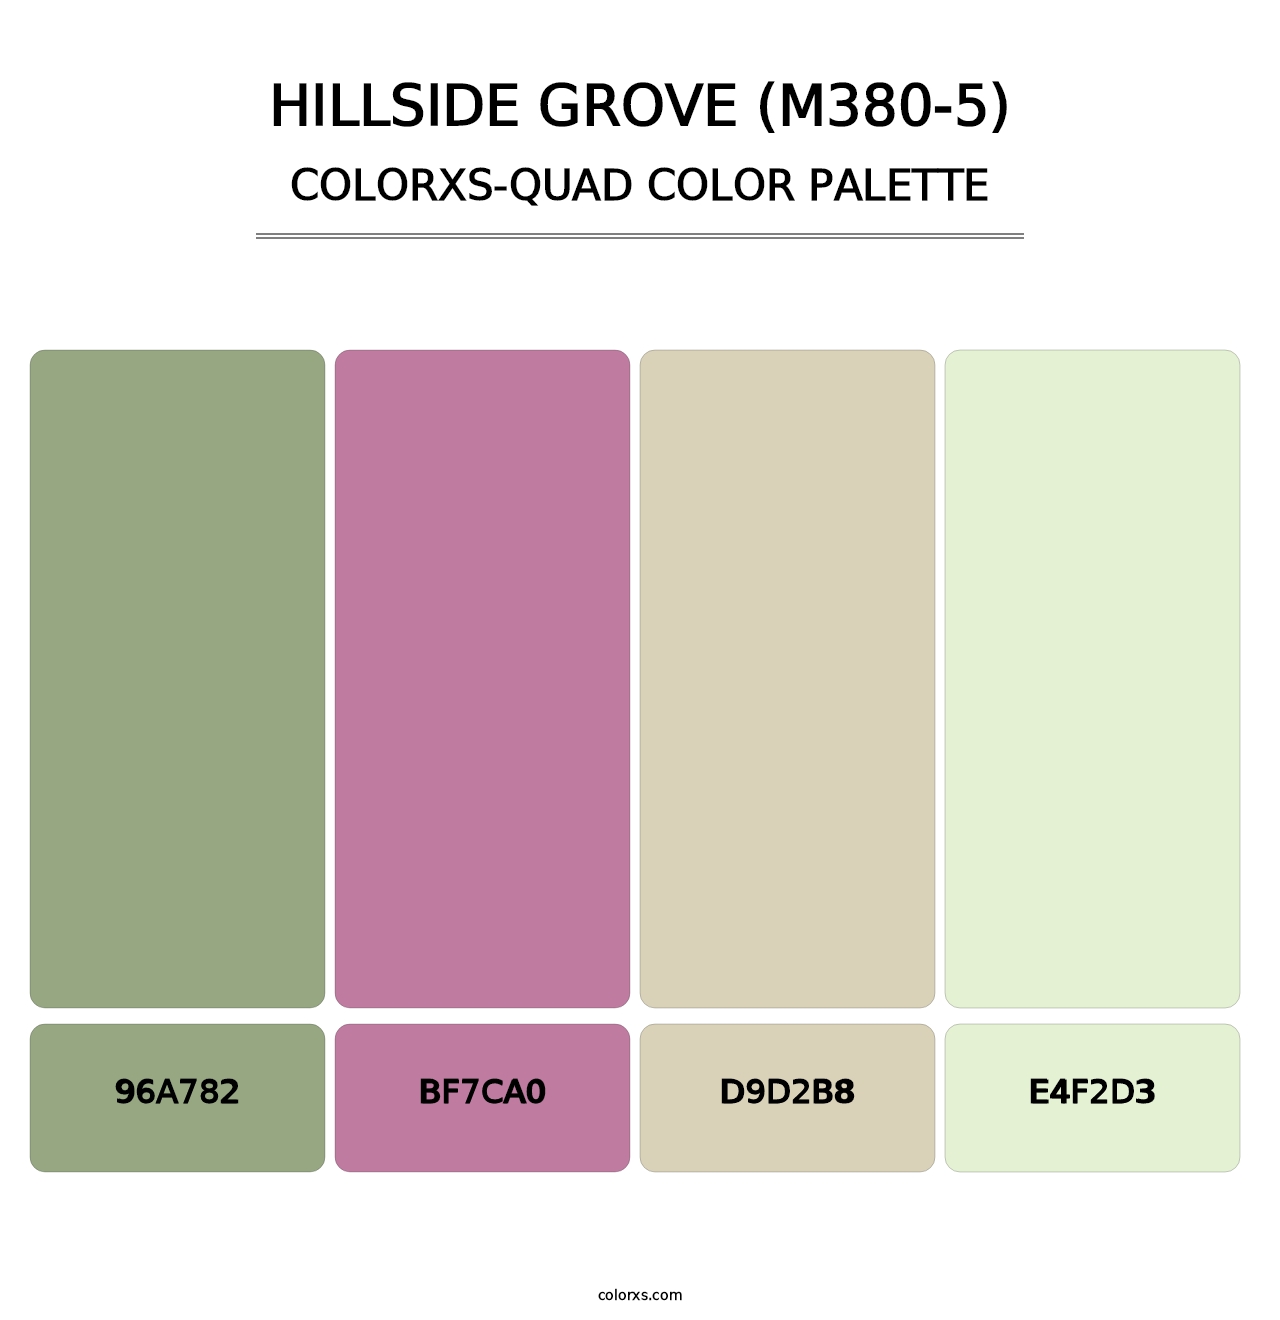 Hillside Grove (M380-5) - Colorxs Quad Palette